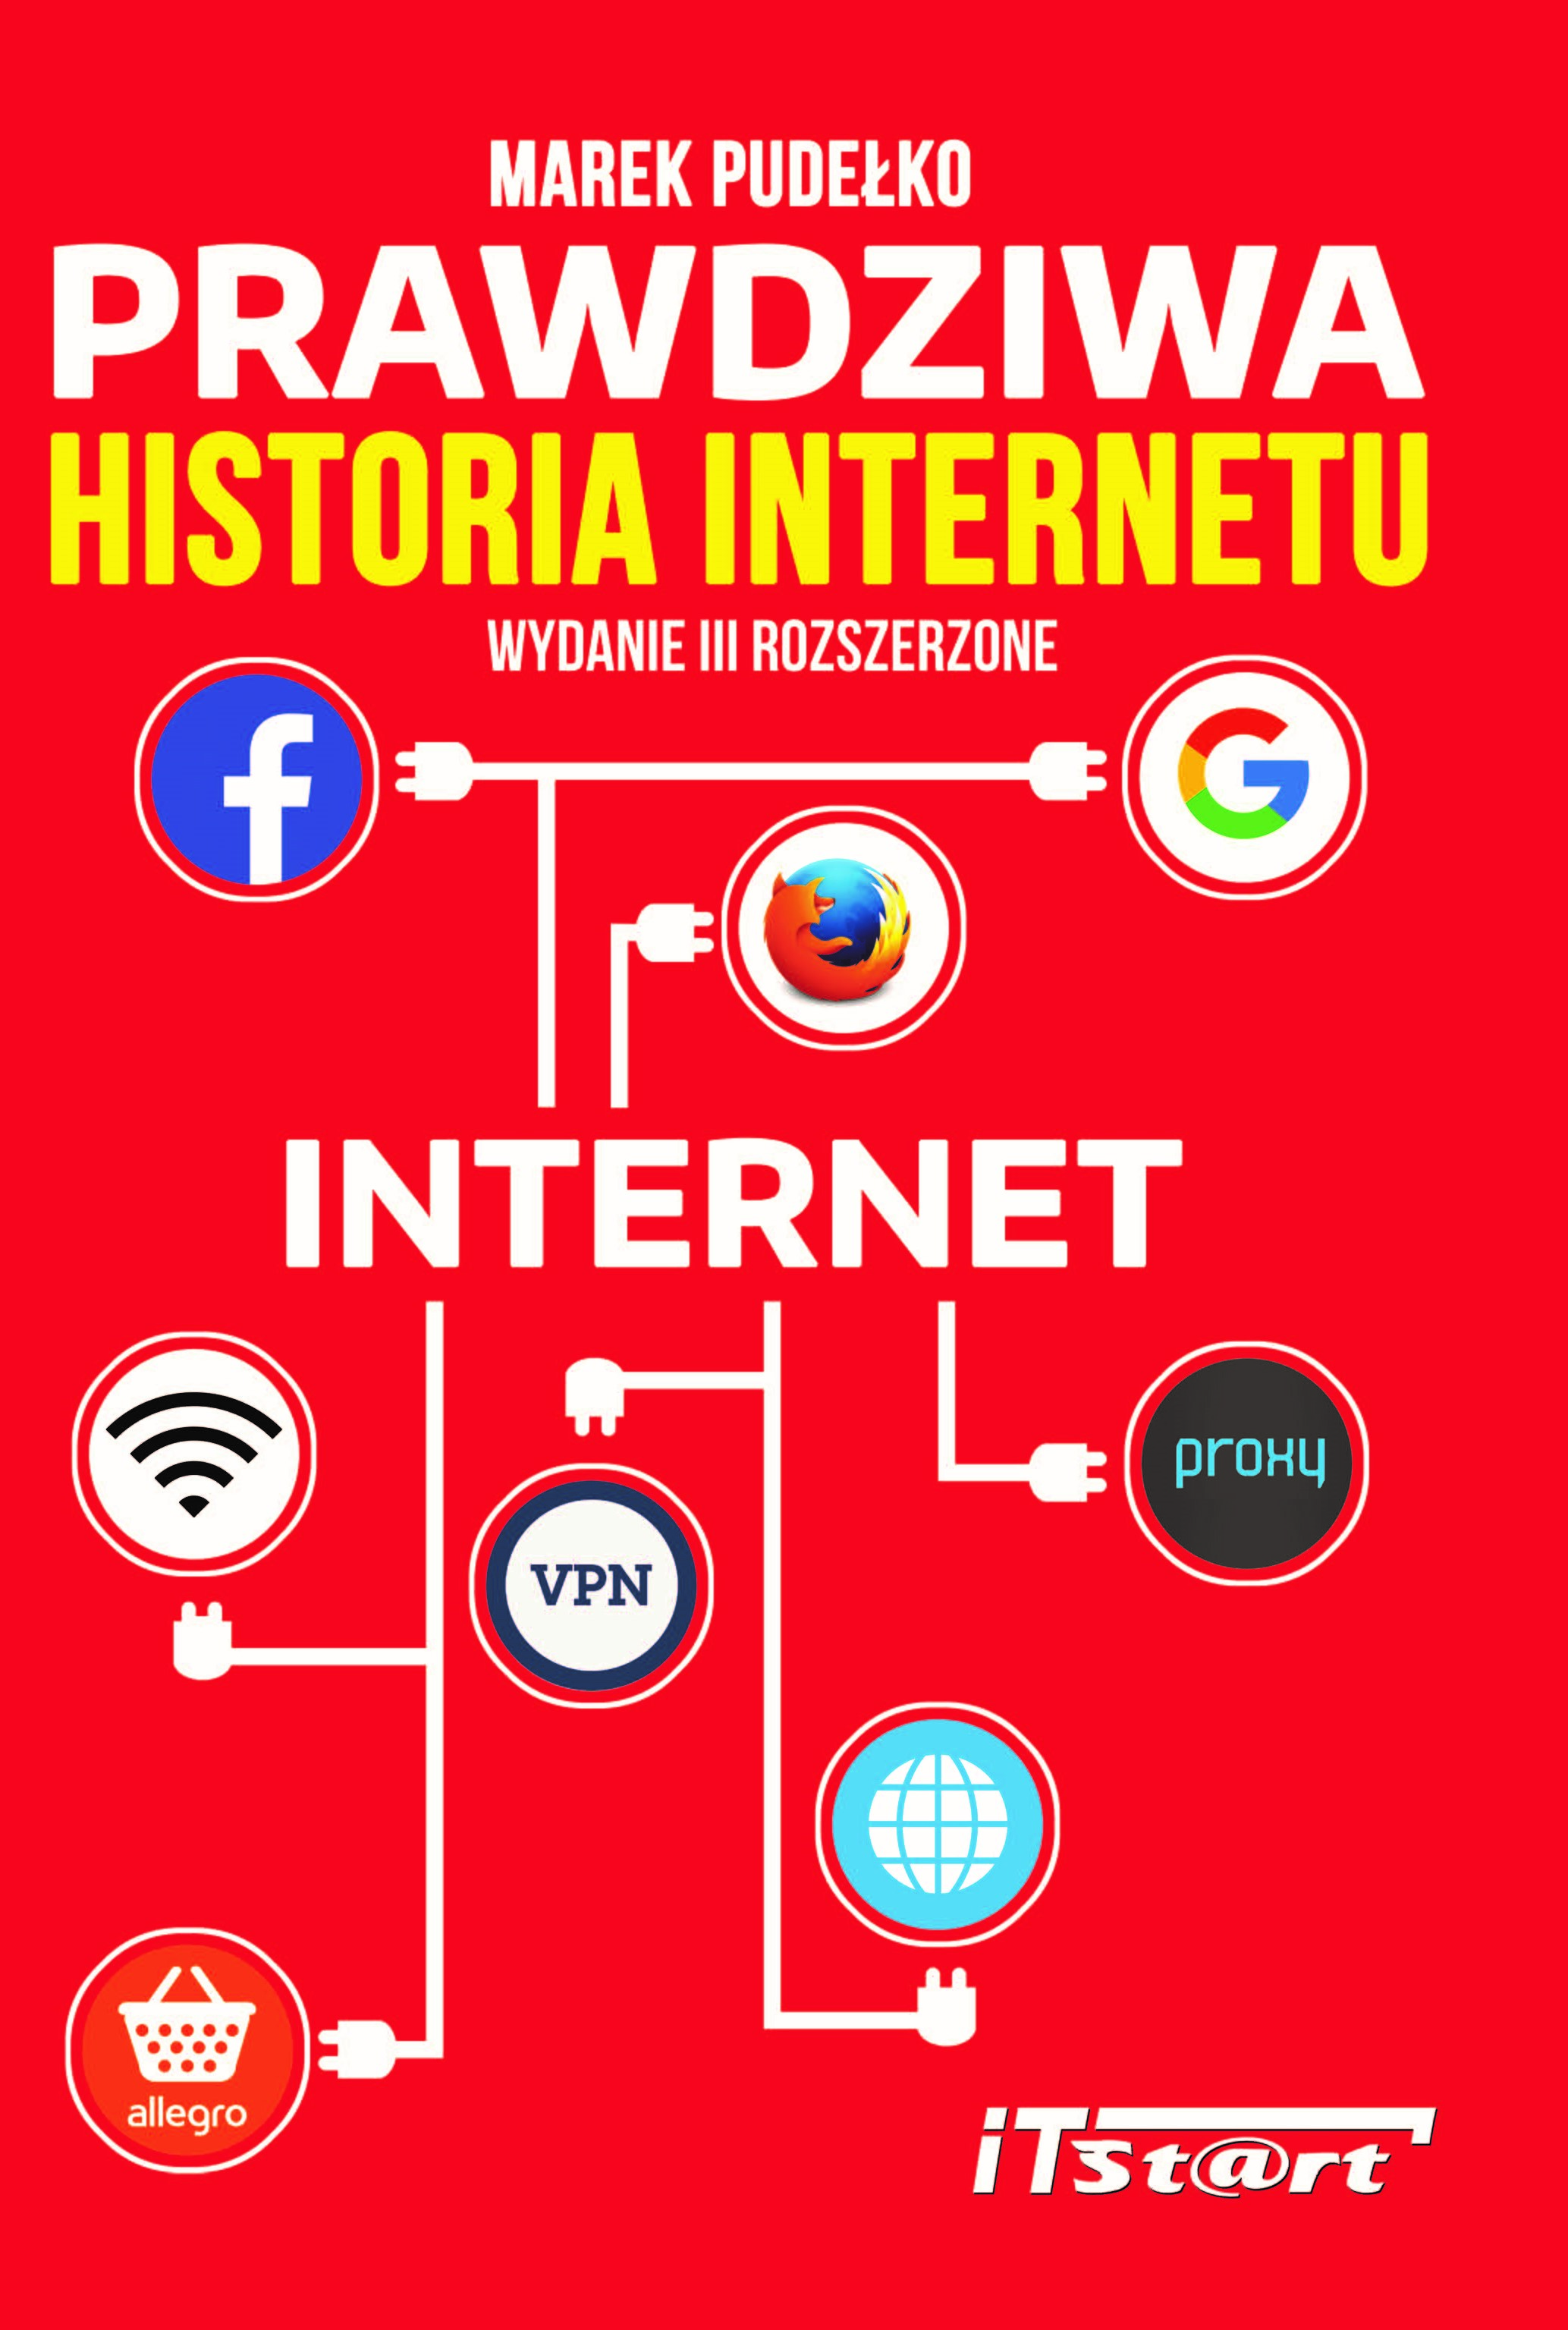 Prawdziwa historia internetu